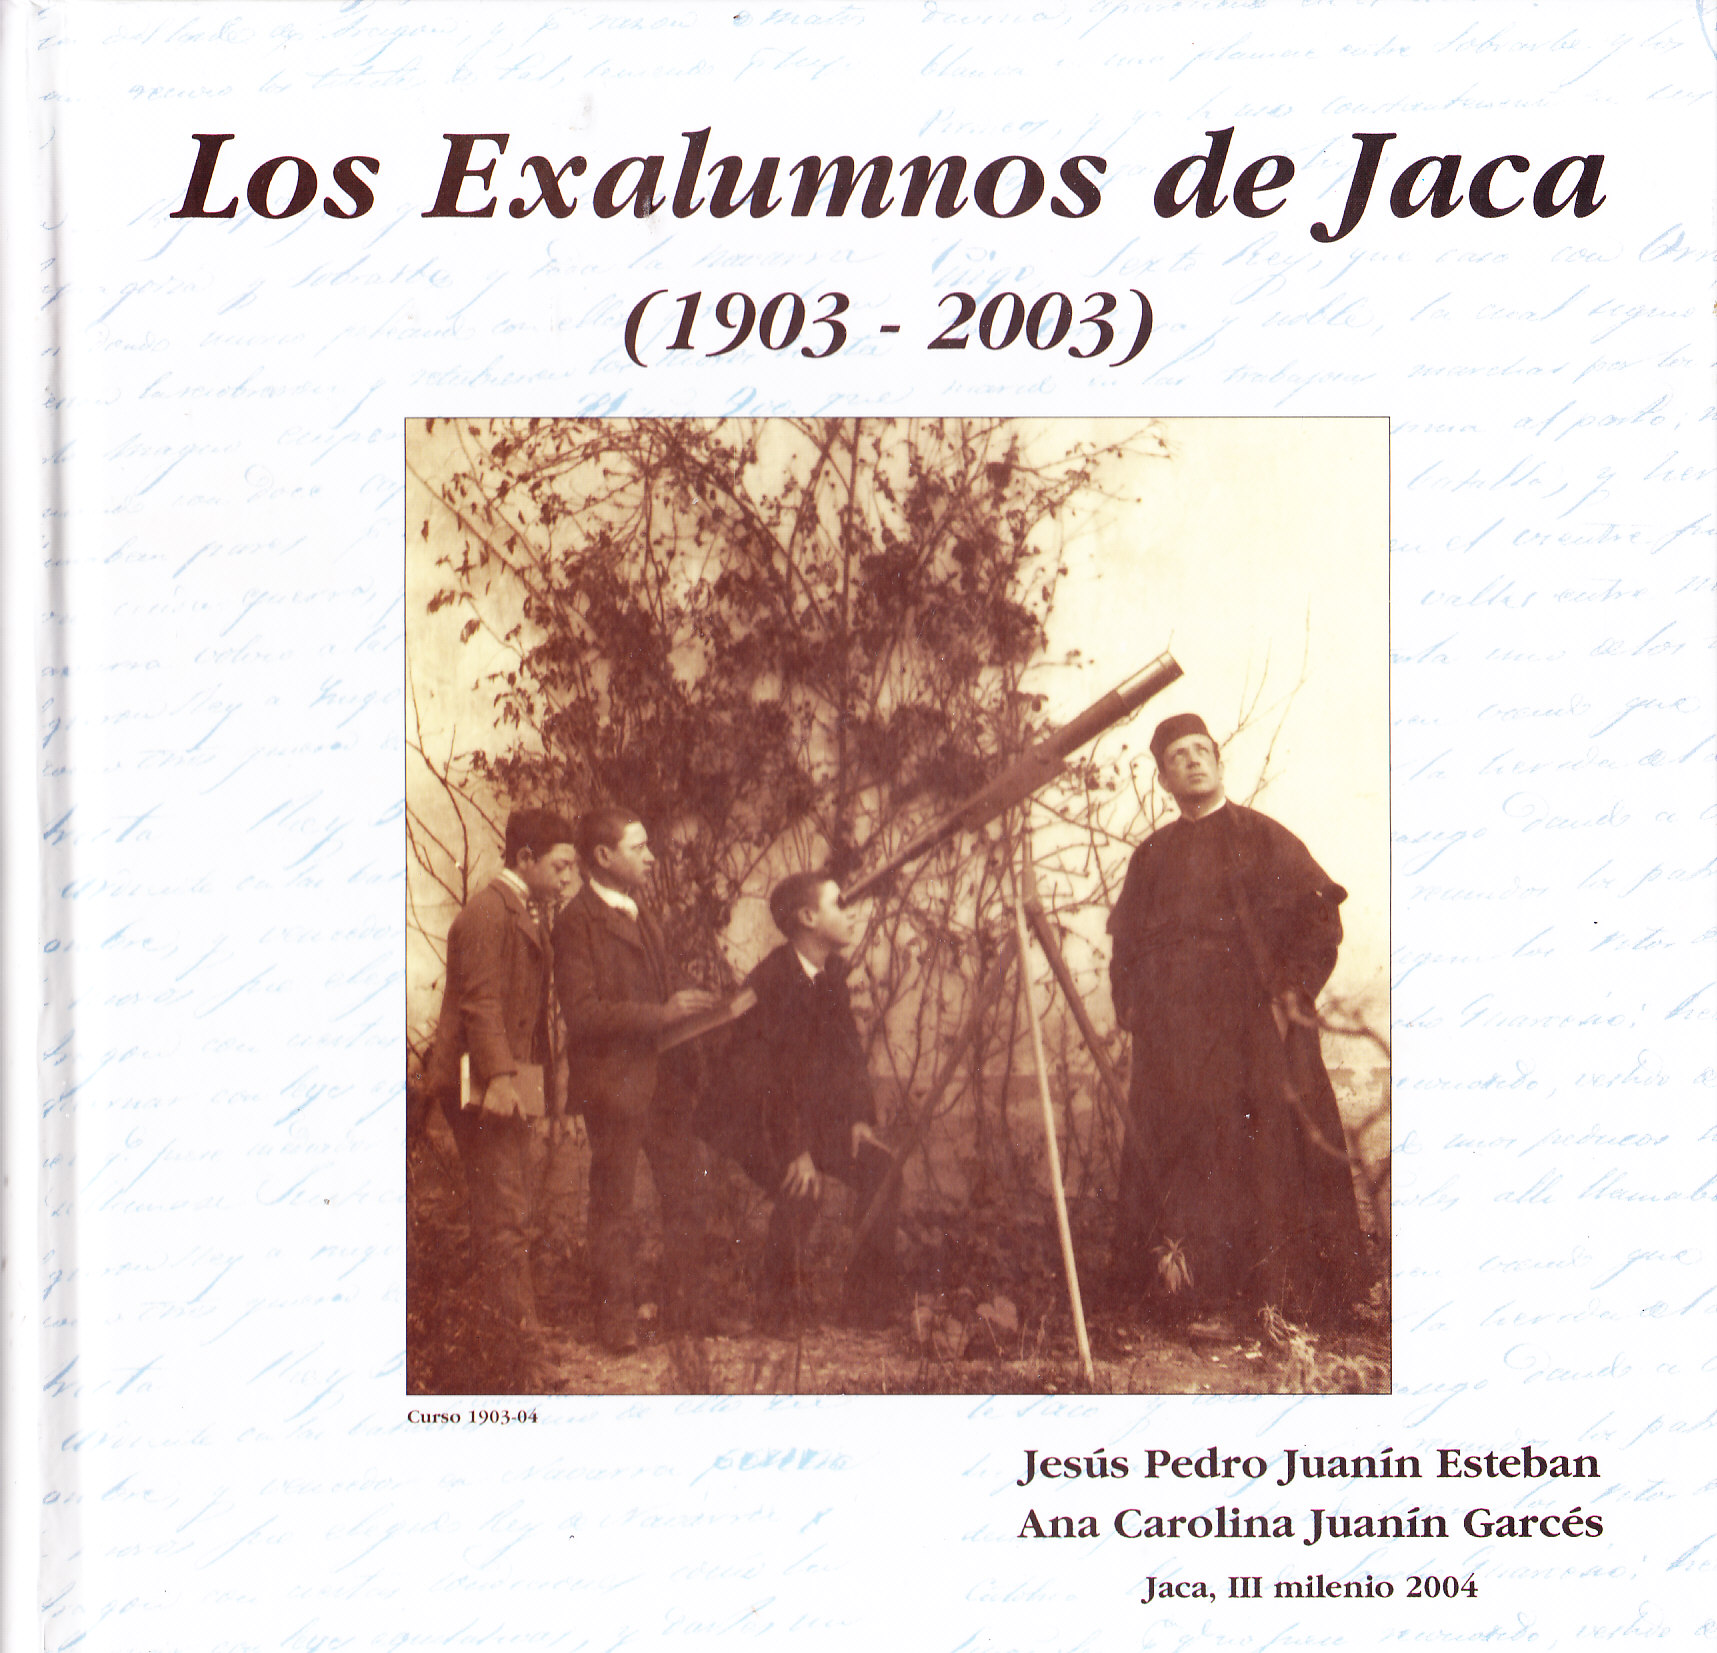 Los Exalumnnos de Jaca (1903 - 2003)